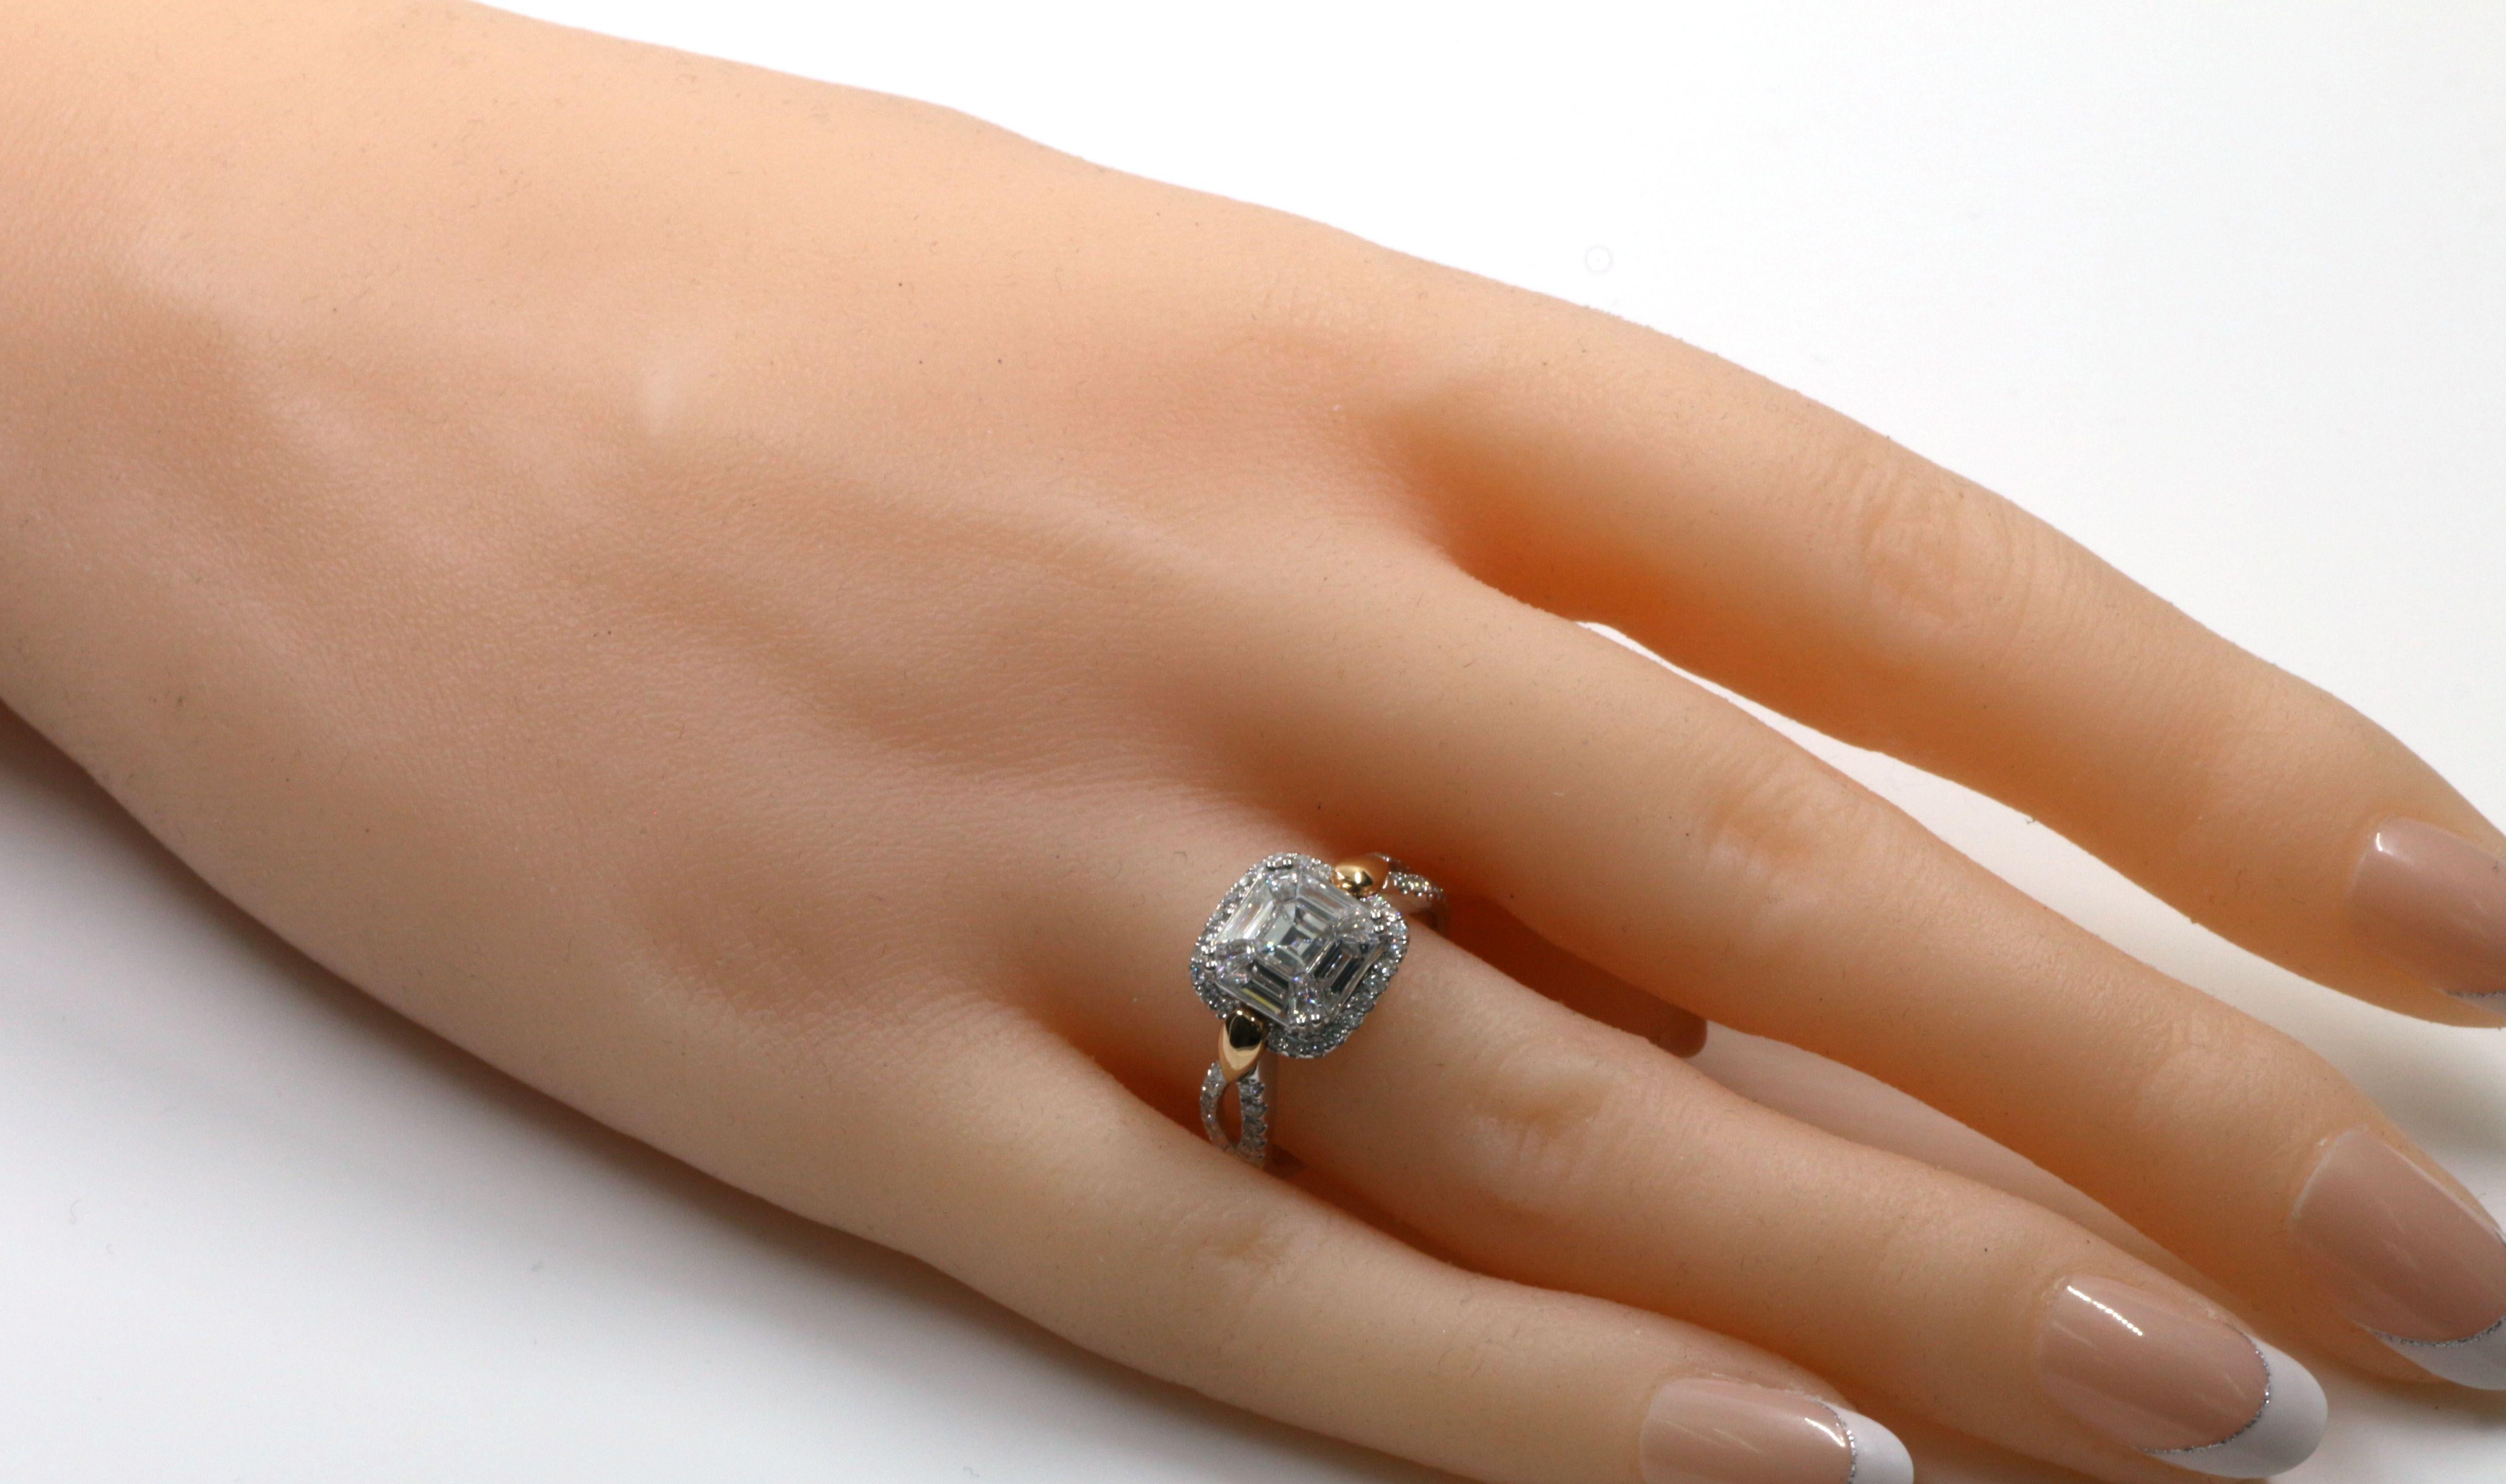 Cette bague présente un pavé de diamants de 1,02 carat serti en illusion, le pavé est serti dans un halo de diamants, des diamants de taille ronde totalisant 0,39 carat. La bague est sertie en or blanc et rose 18 carats. 

US 6.5
Le